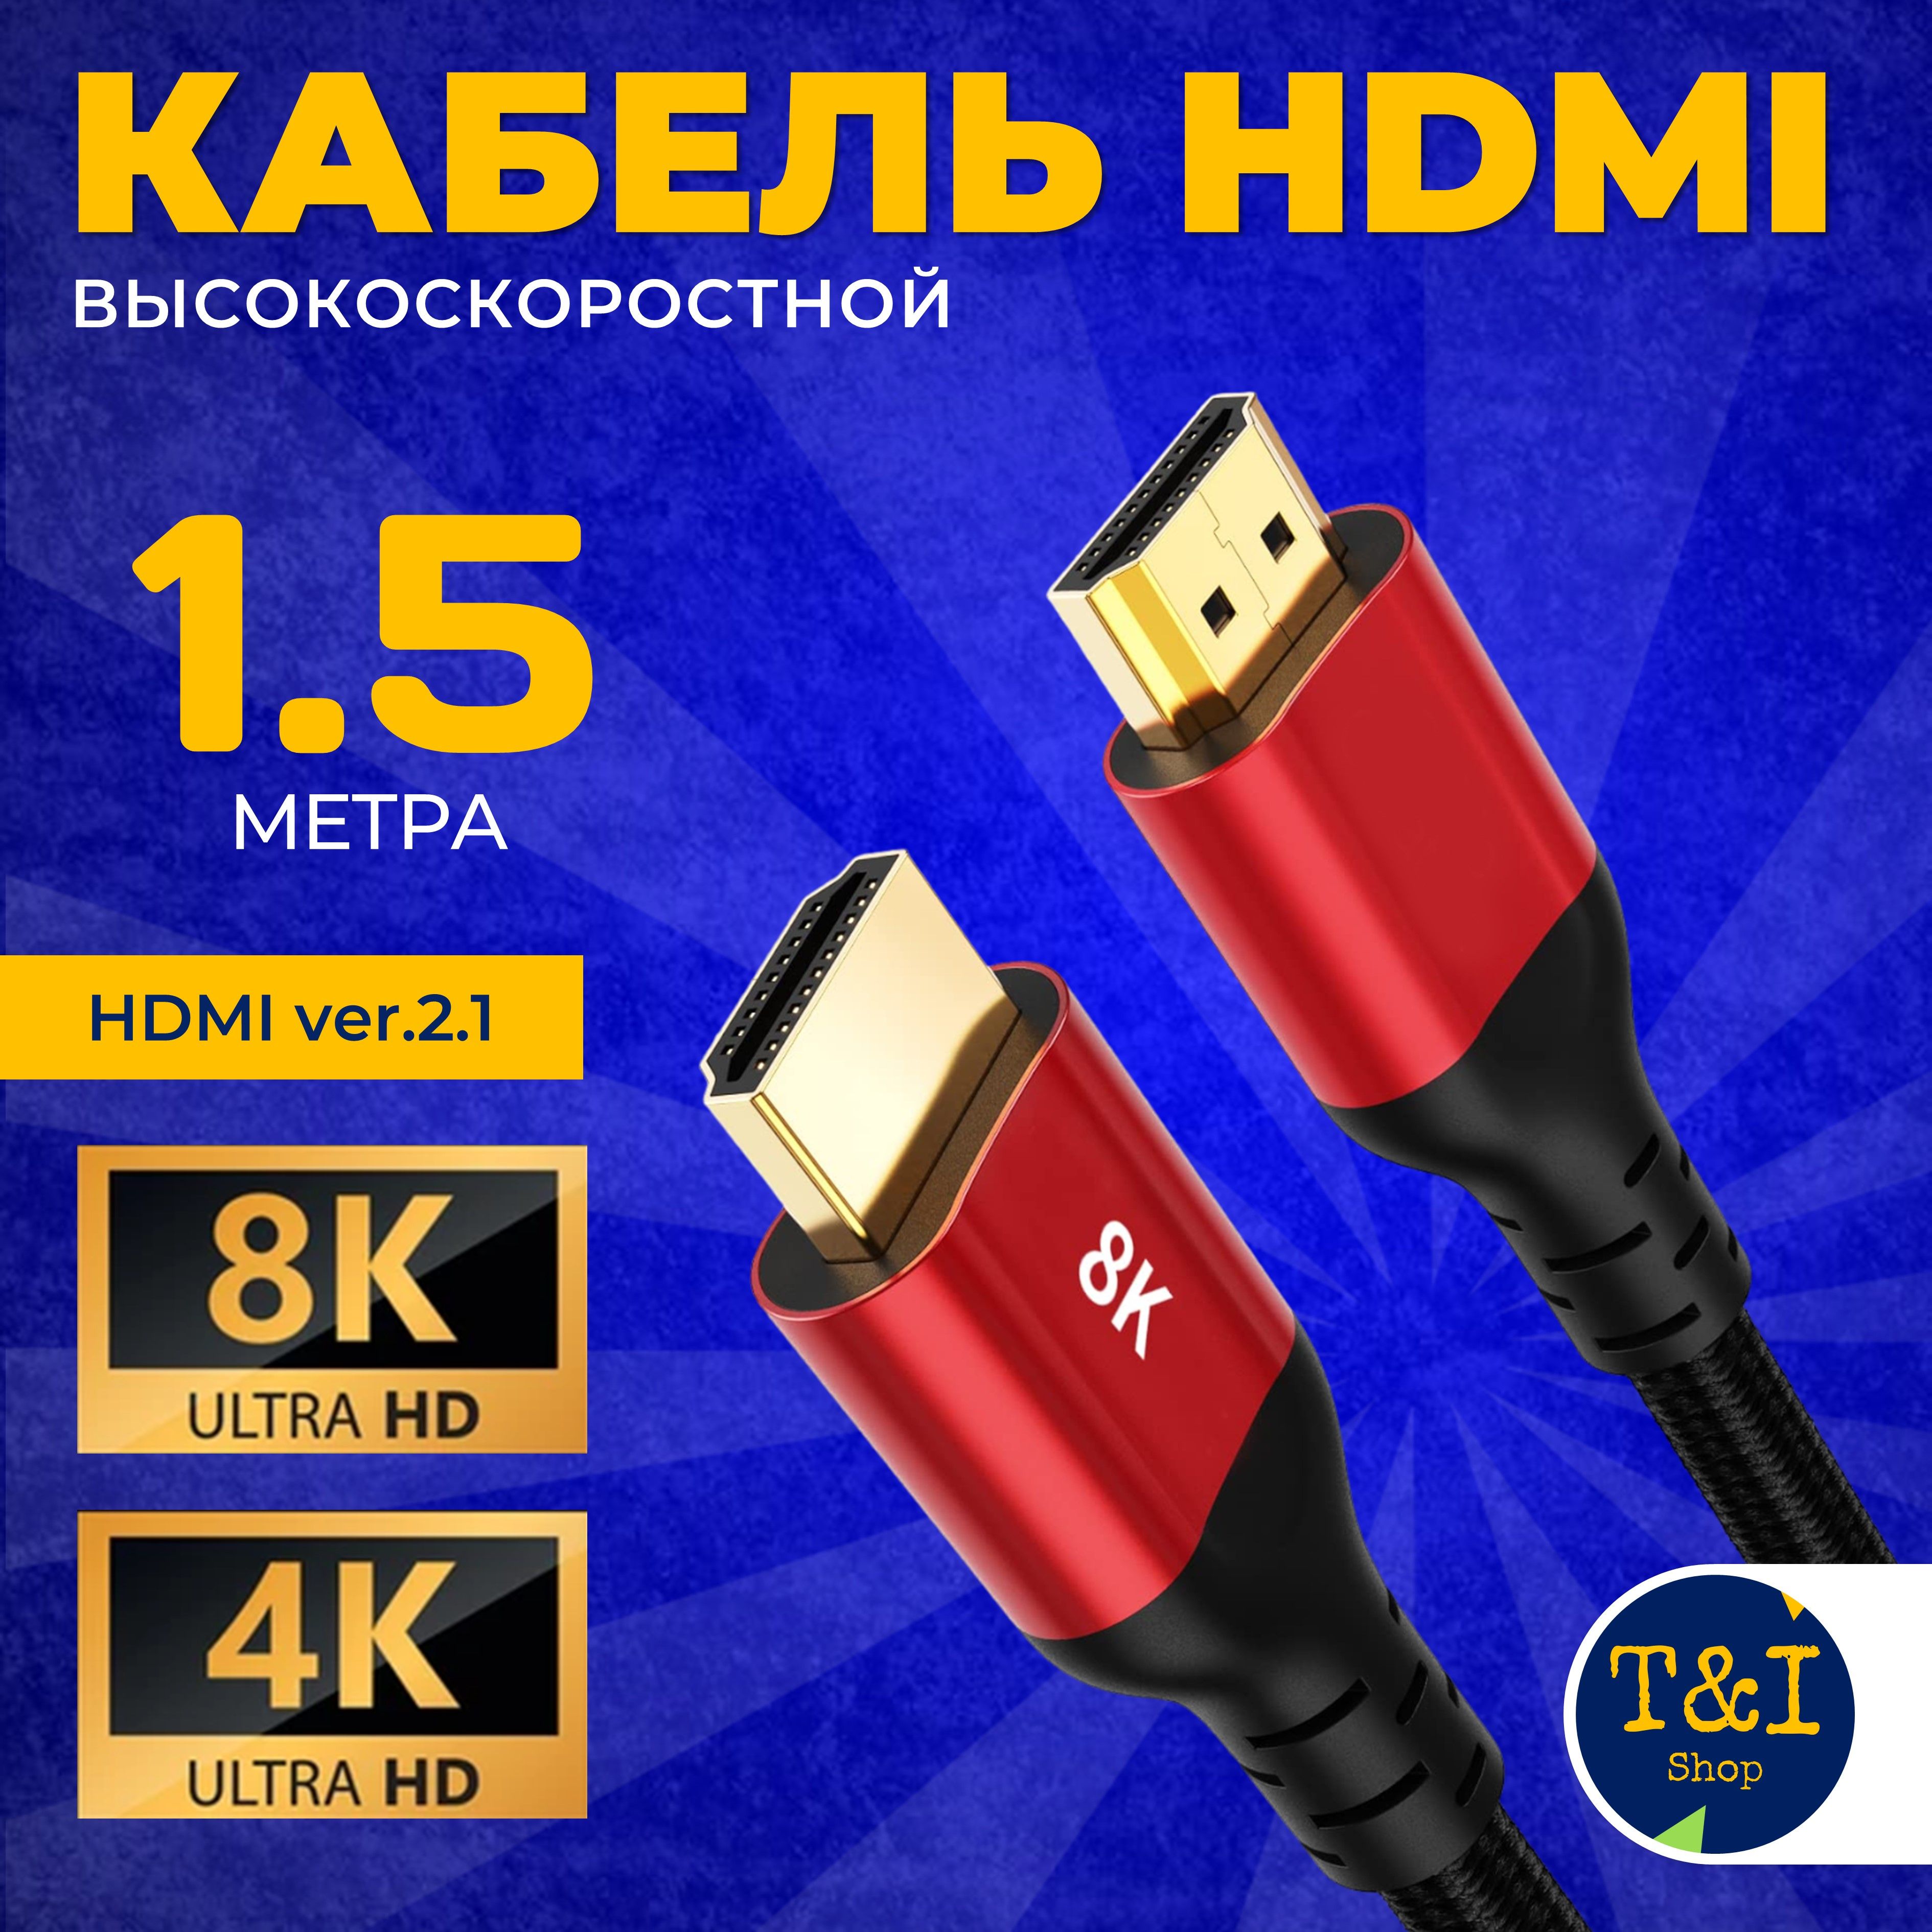 Кабель HDMI кабель HDMI -  по низкой цене в е .